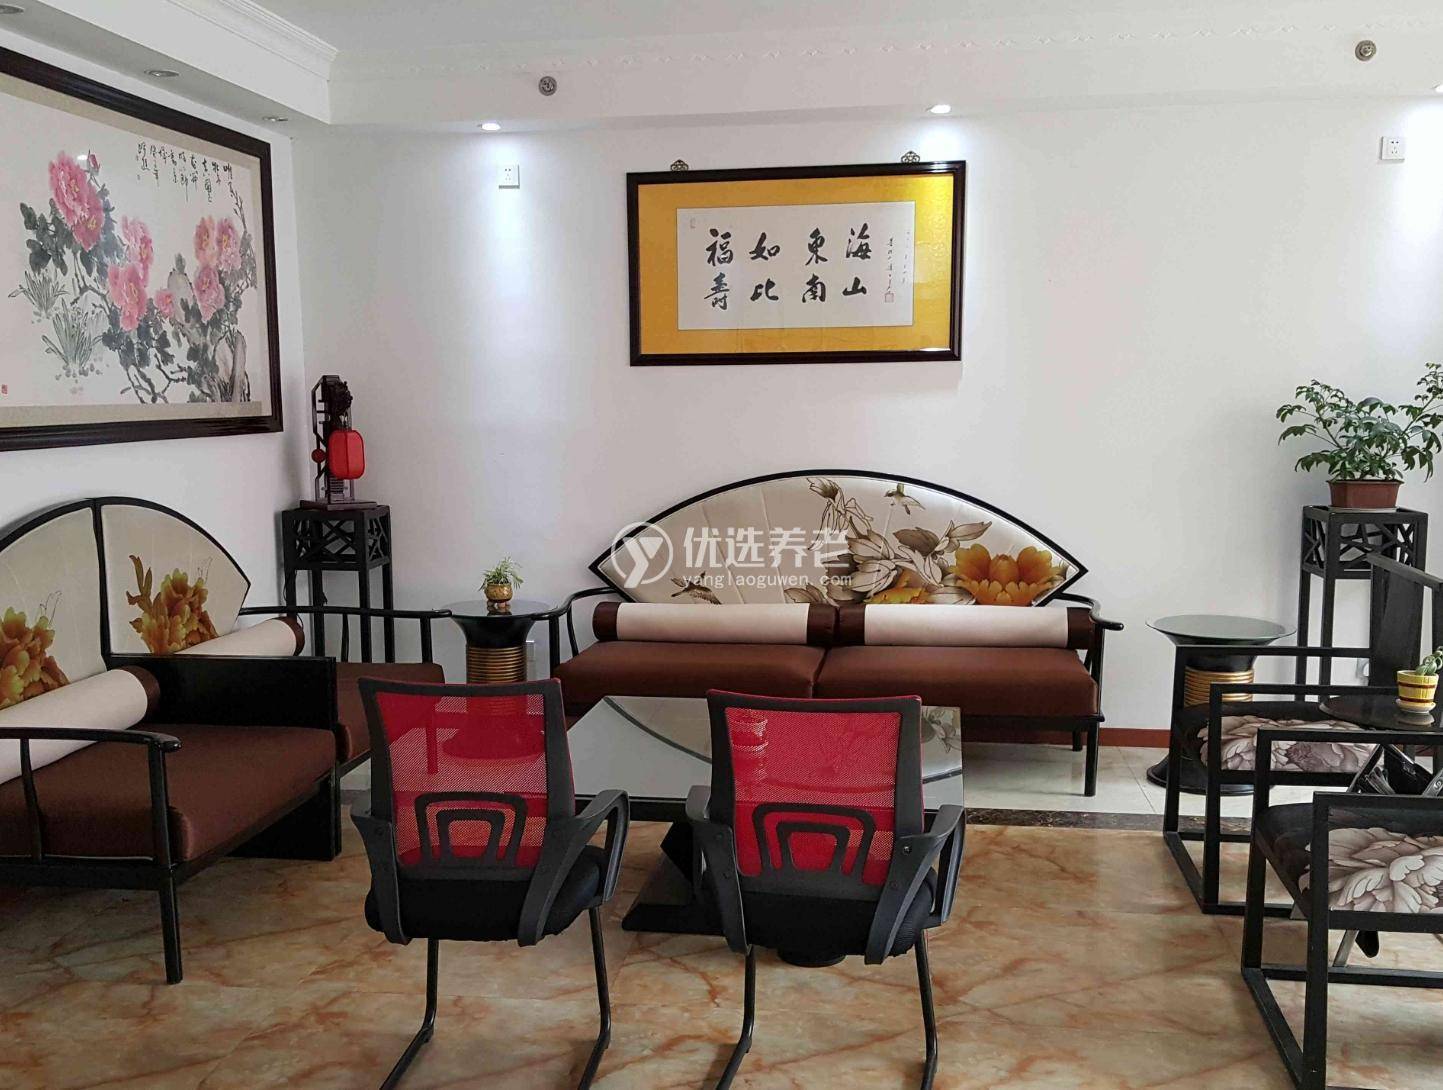 上海怡安养老院院内环境4